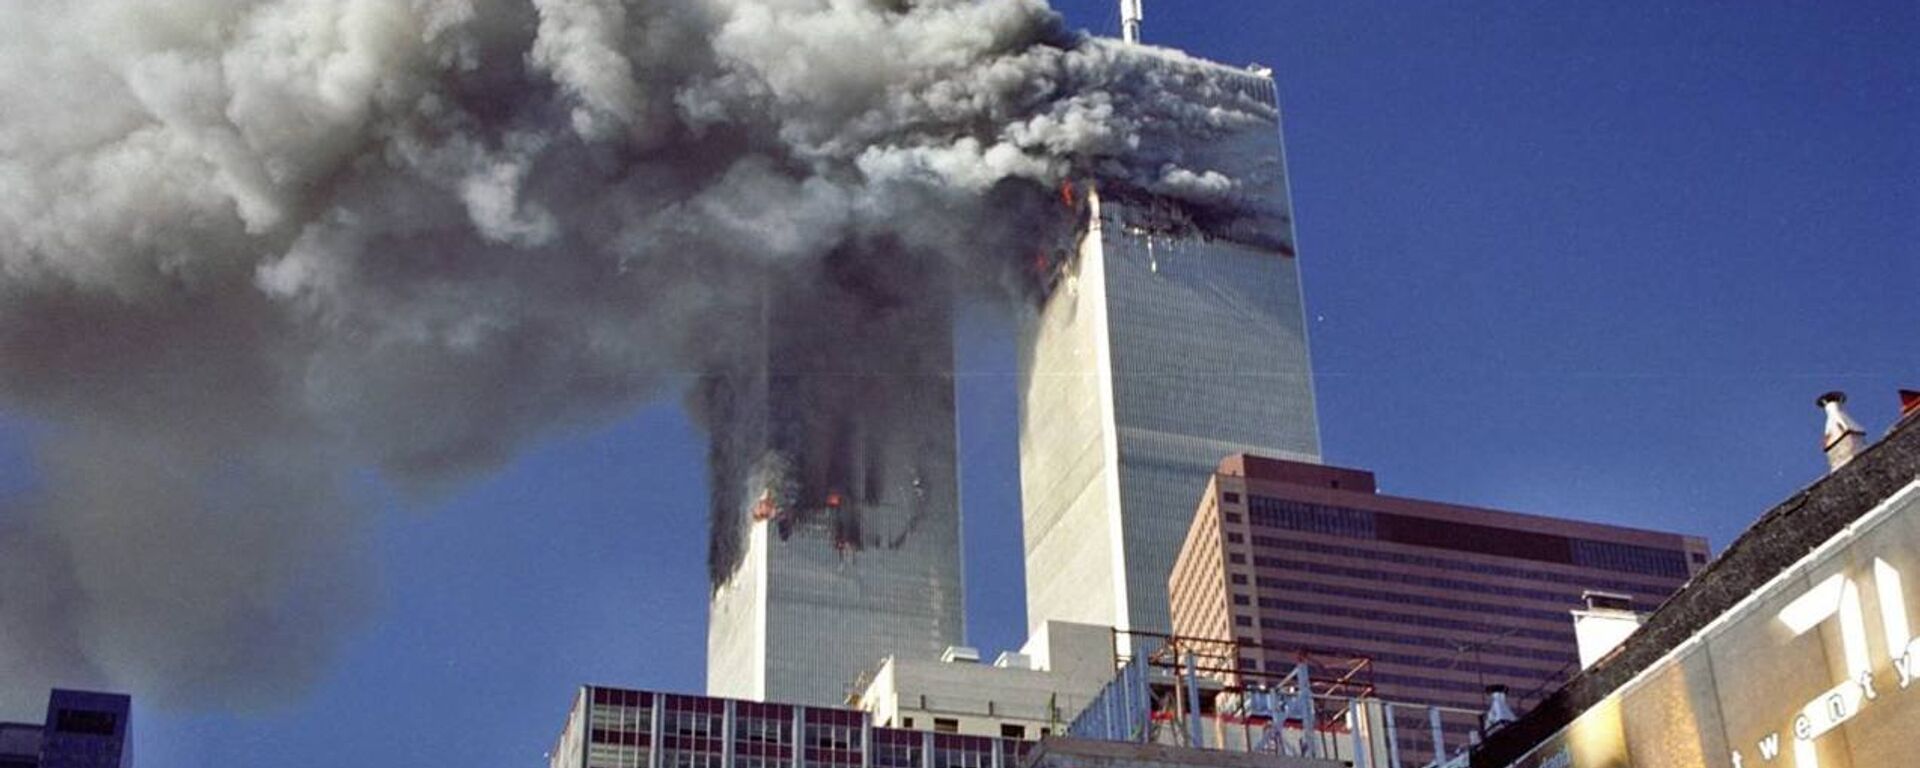 Терористички напад на Светски трговински центар у Њујорку 11. септембaра 2001. године  - Sputnik Србија, 1920, 10.09.2021